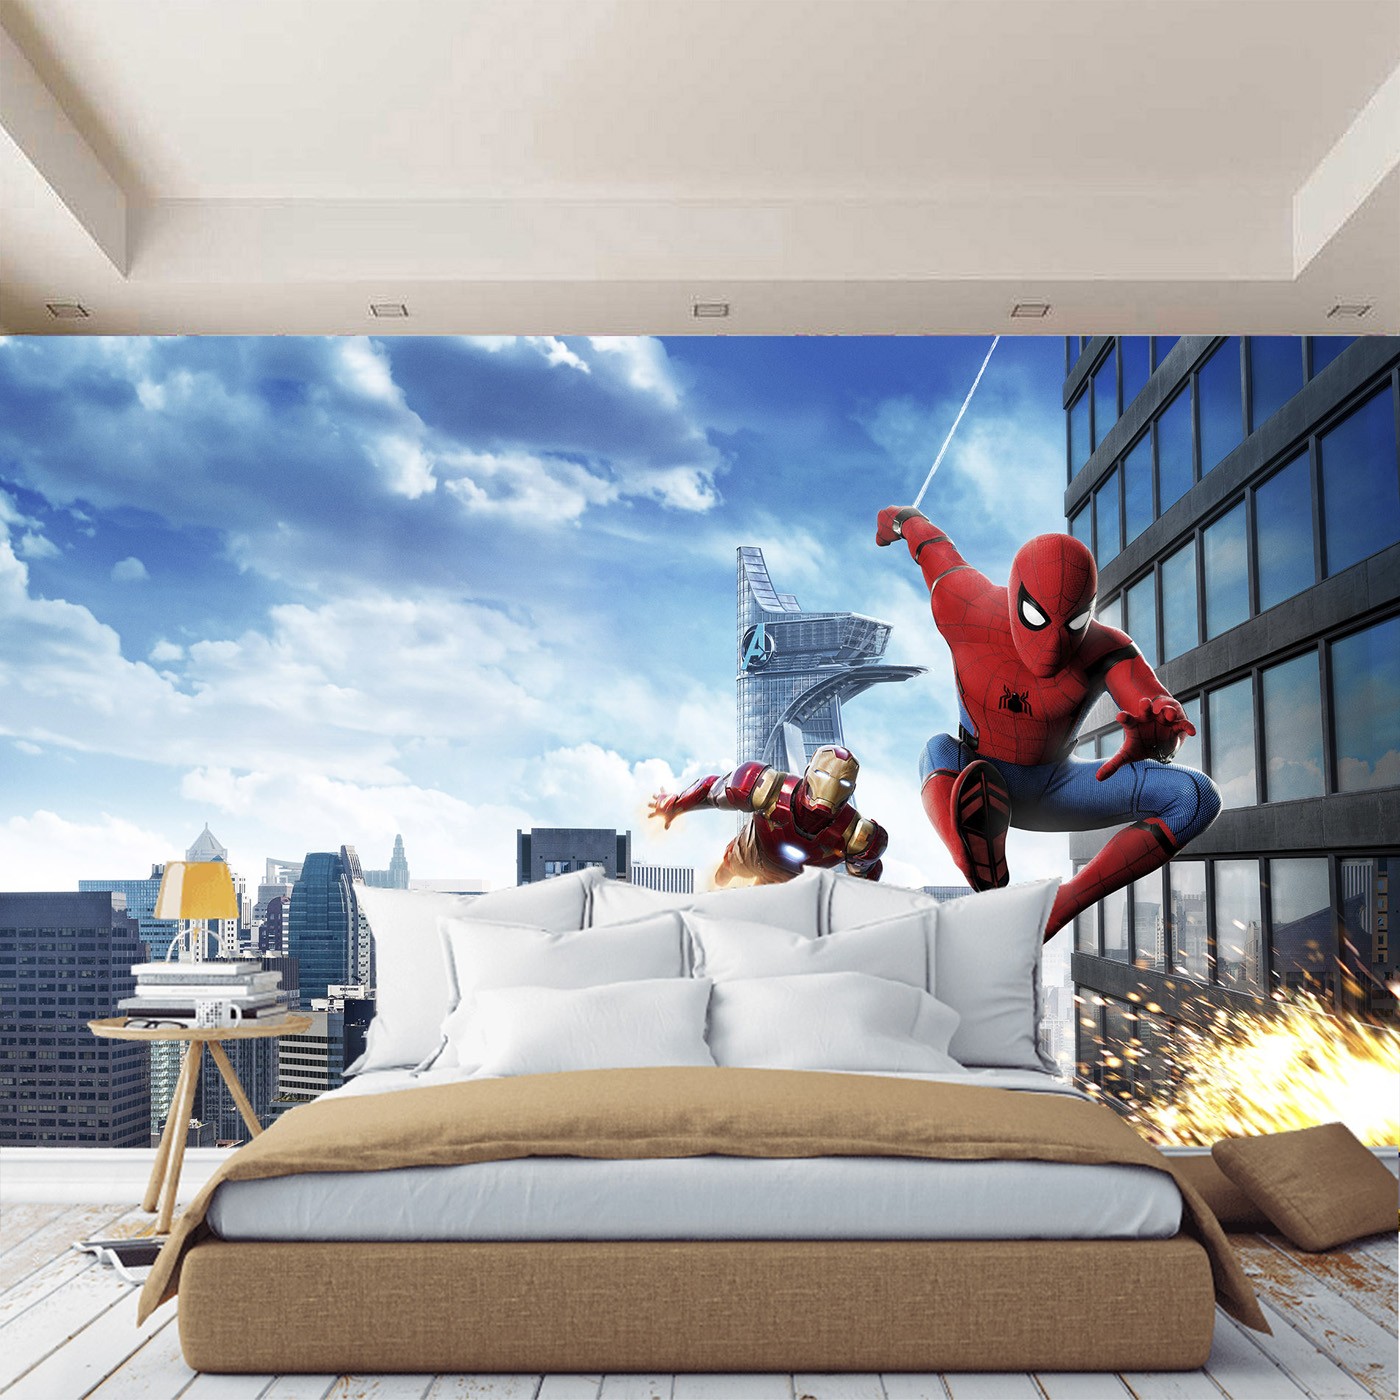 картинка Фотообои Человек паук и Железный человек на фоне небоскребовот интернет-магазина Фотомили